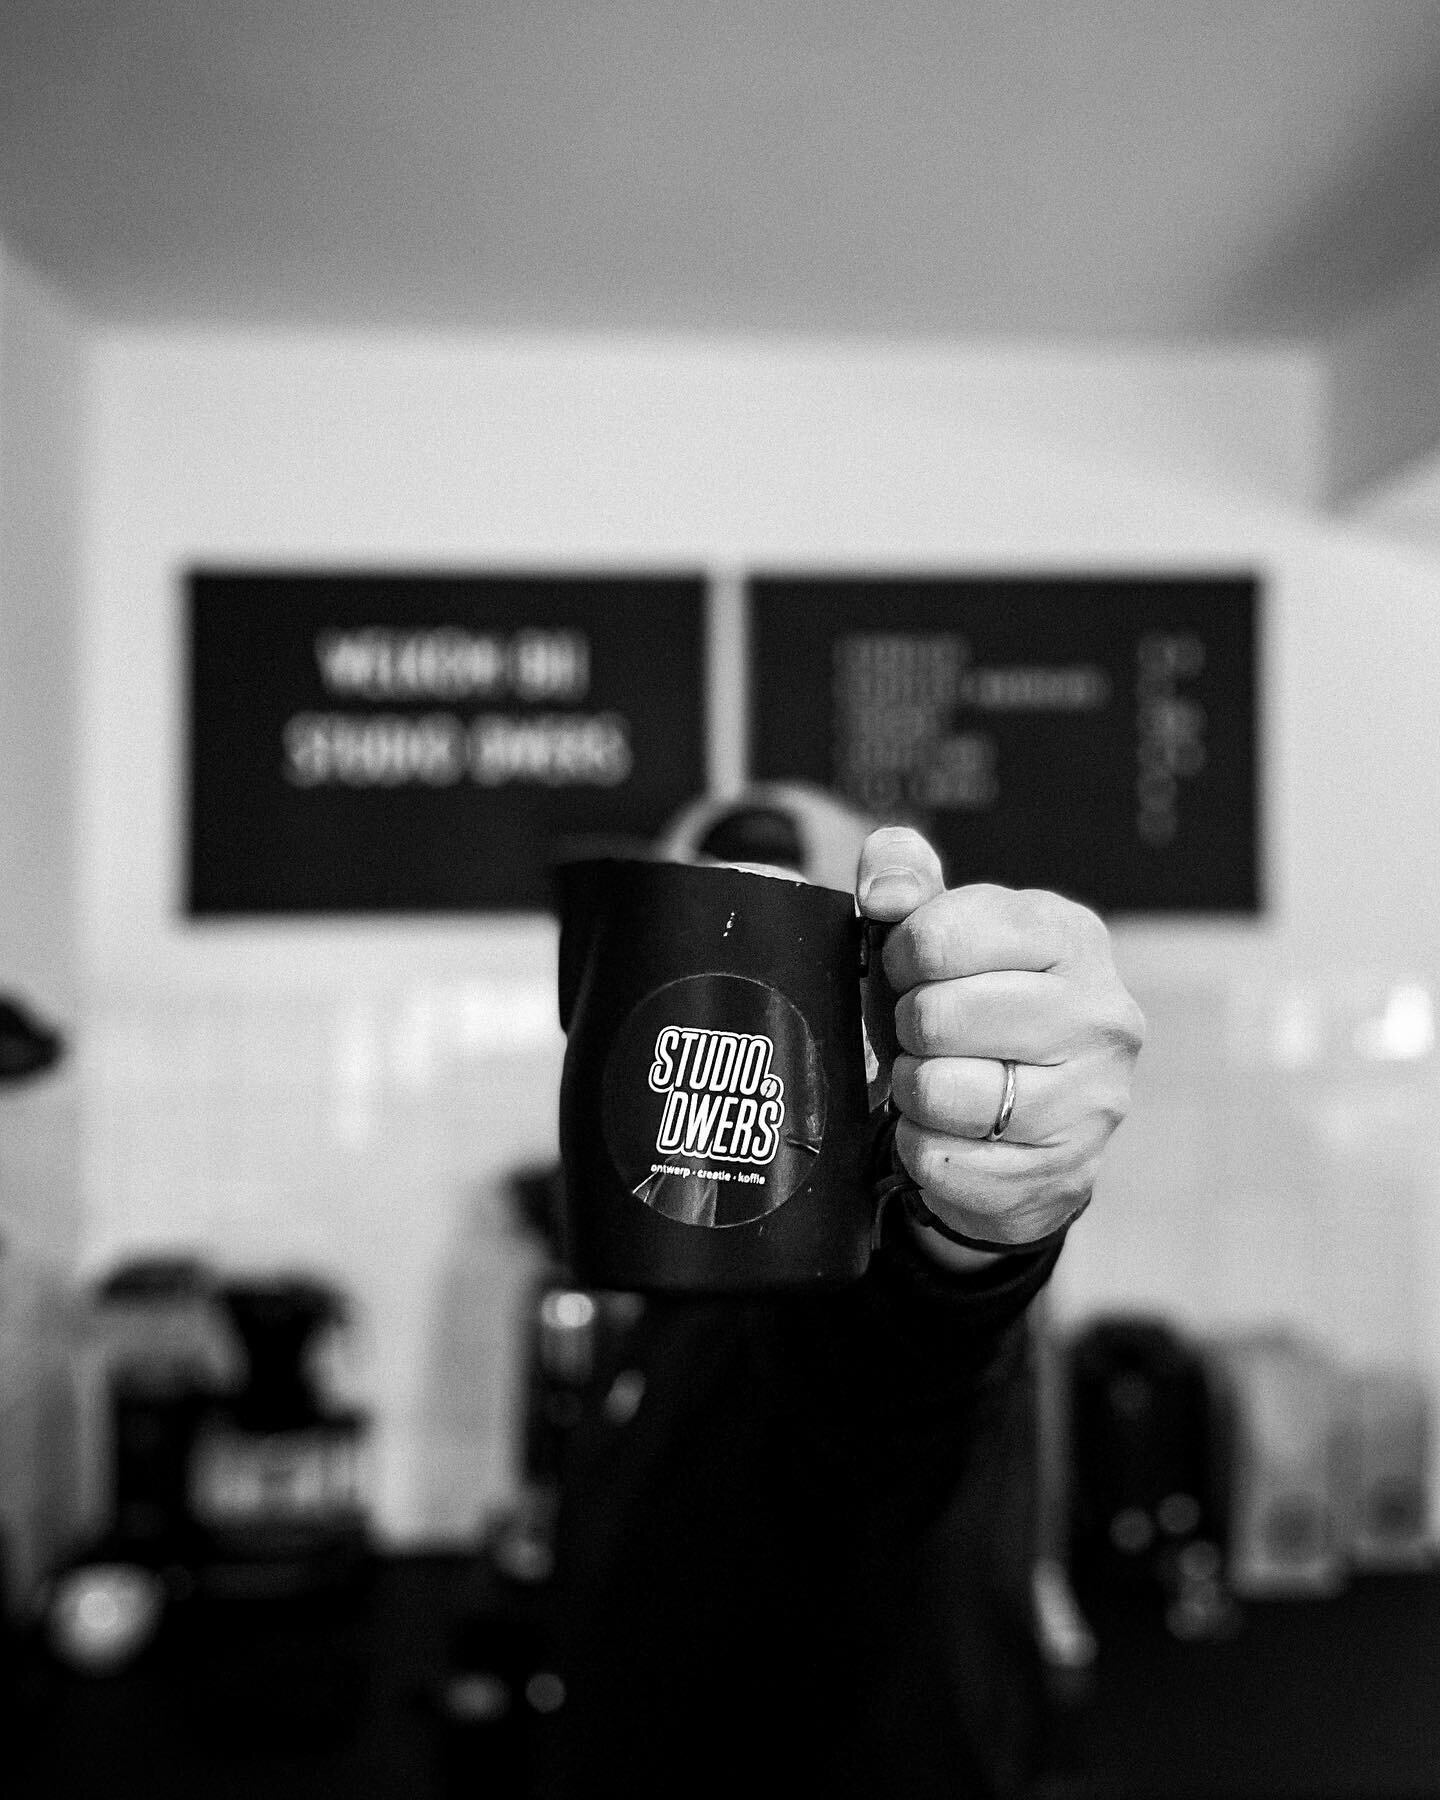 Bietje stil hier&hellip;maar still here. ✌🏻⚡️
.
#ontwerp #creatie #koffie #coffee#specialtycoffee #cappuccino #espresso #latteart #barista #hidden #hiddengem #beekendonk #laarbeek #koffiebonen #vers #workinprogress #studiodwers